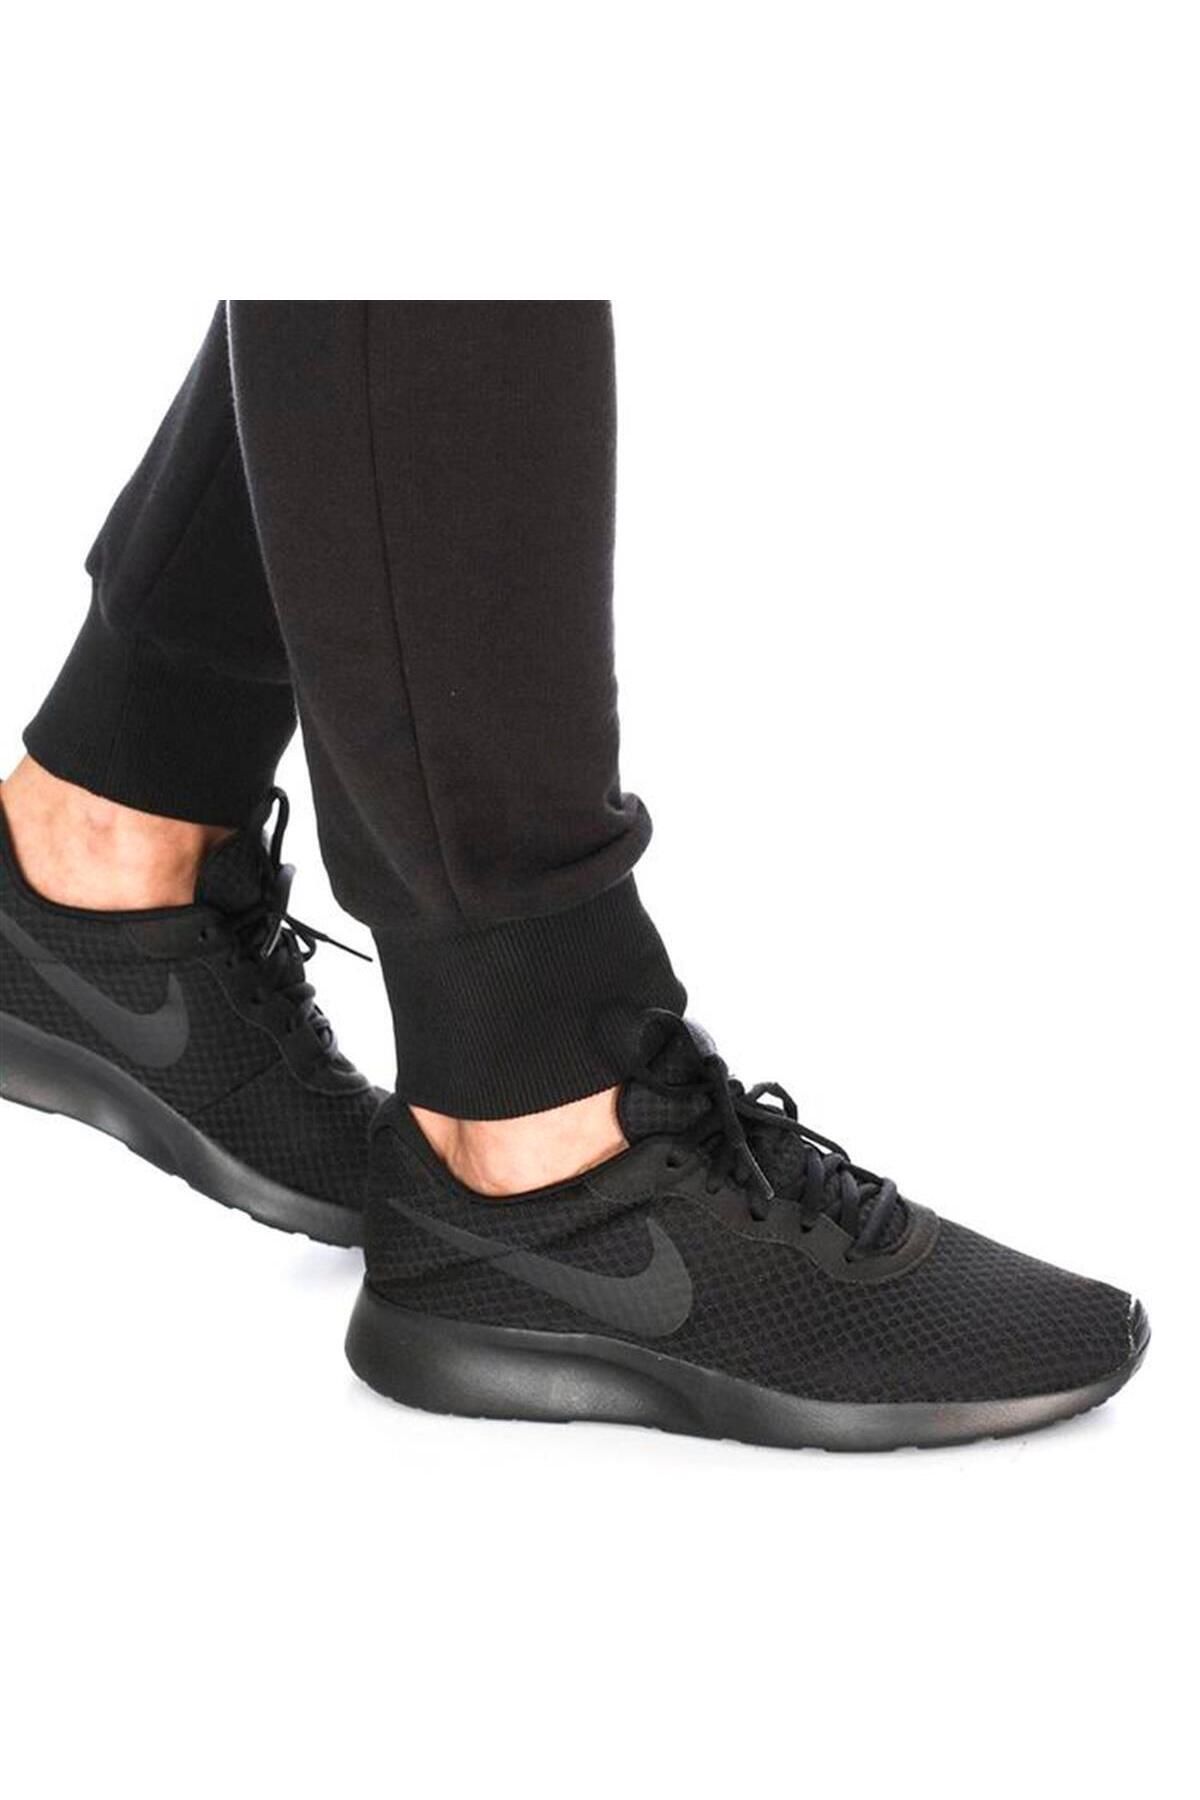 Nike Tanjun Erkek Siyah Koşu Ve Yürüyüş Ayakkabısı 812654-001